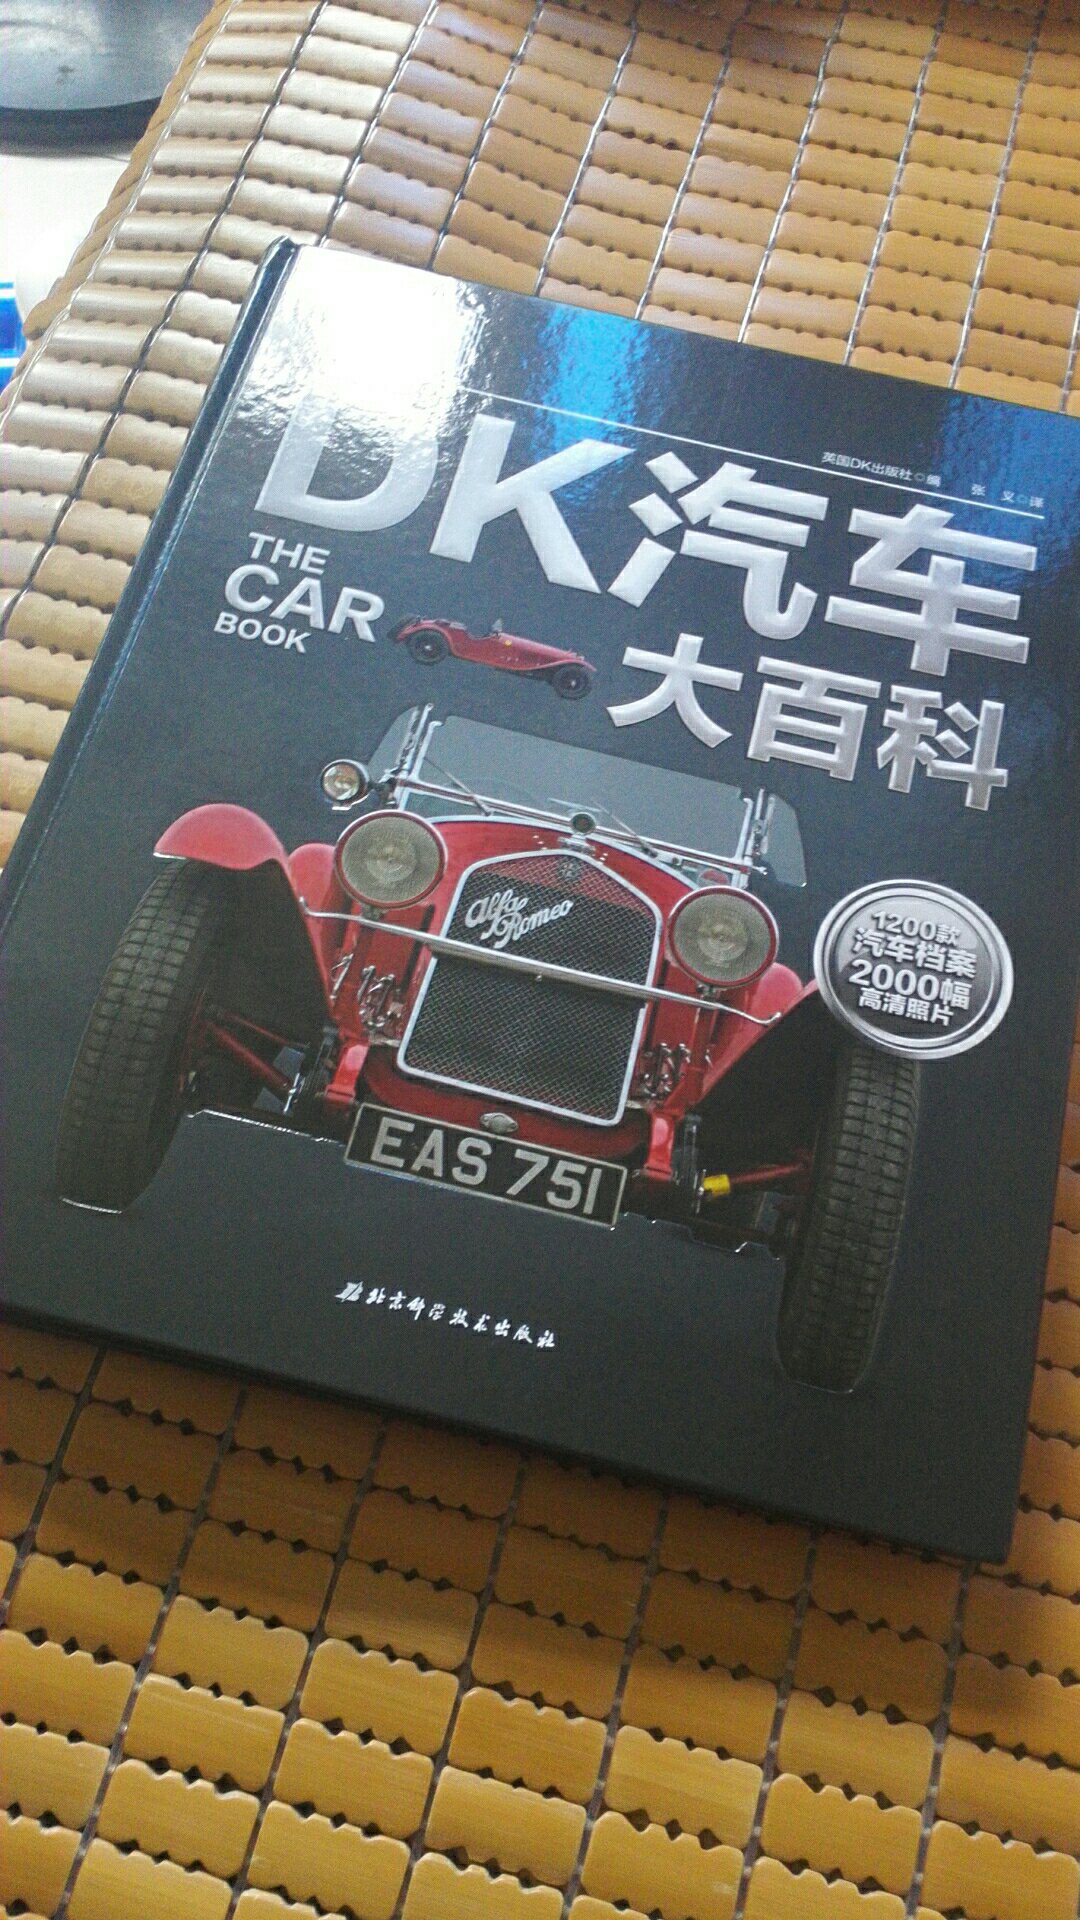 DK出品，必属精品。一本让我们了解汽车发展史的书。